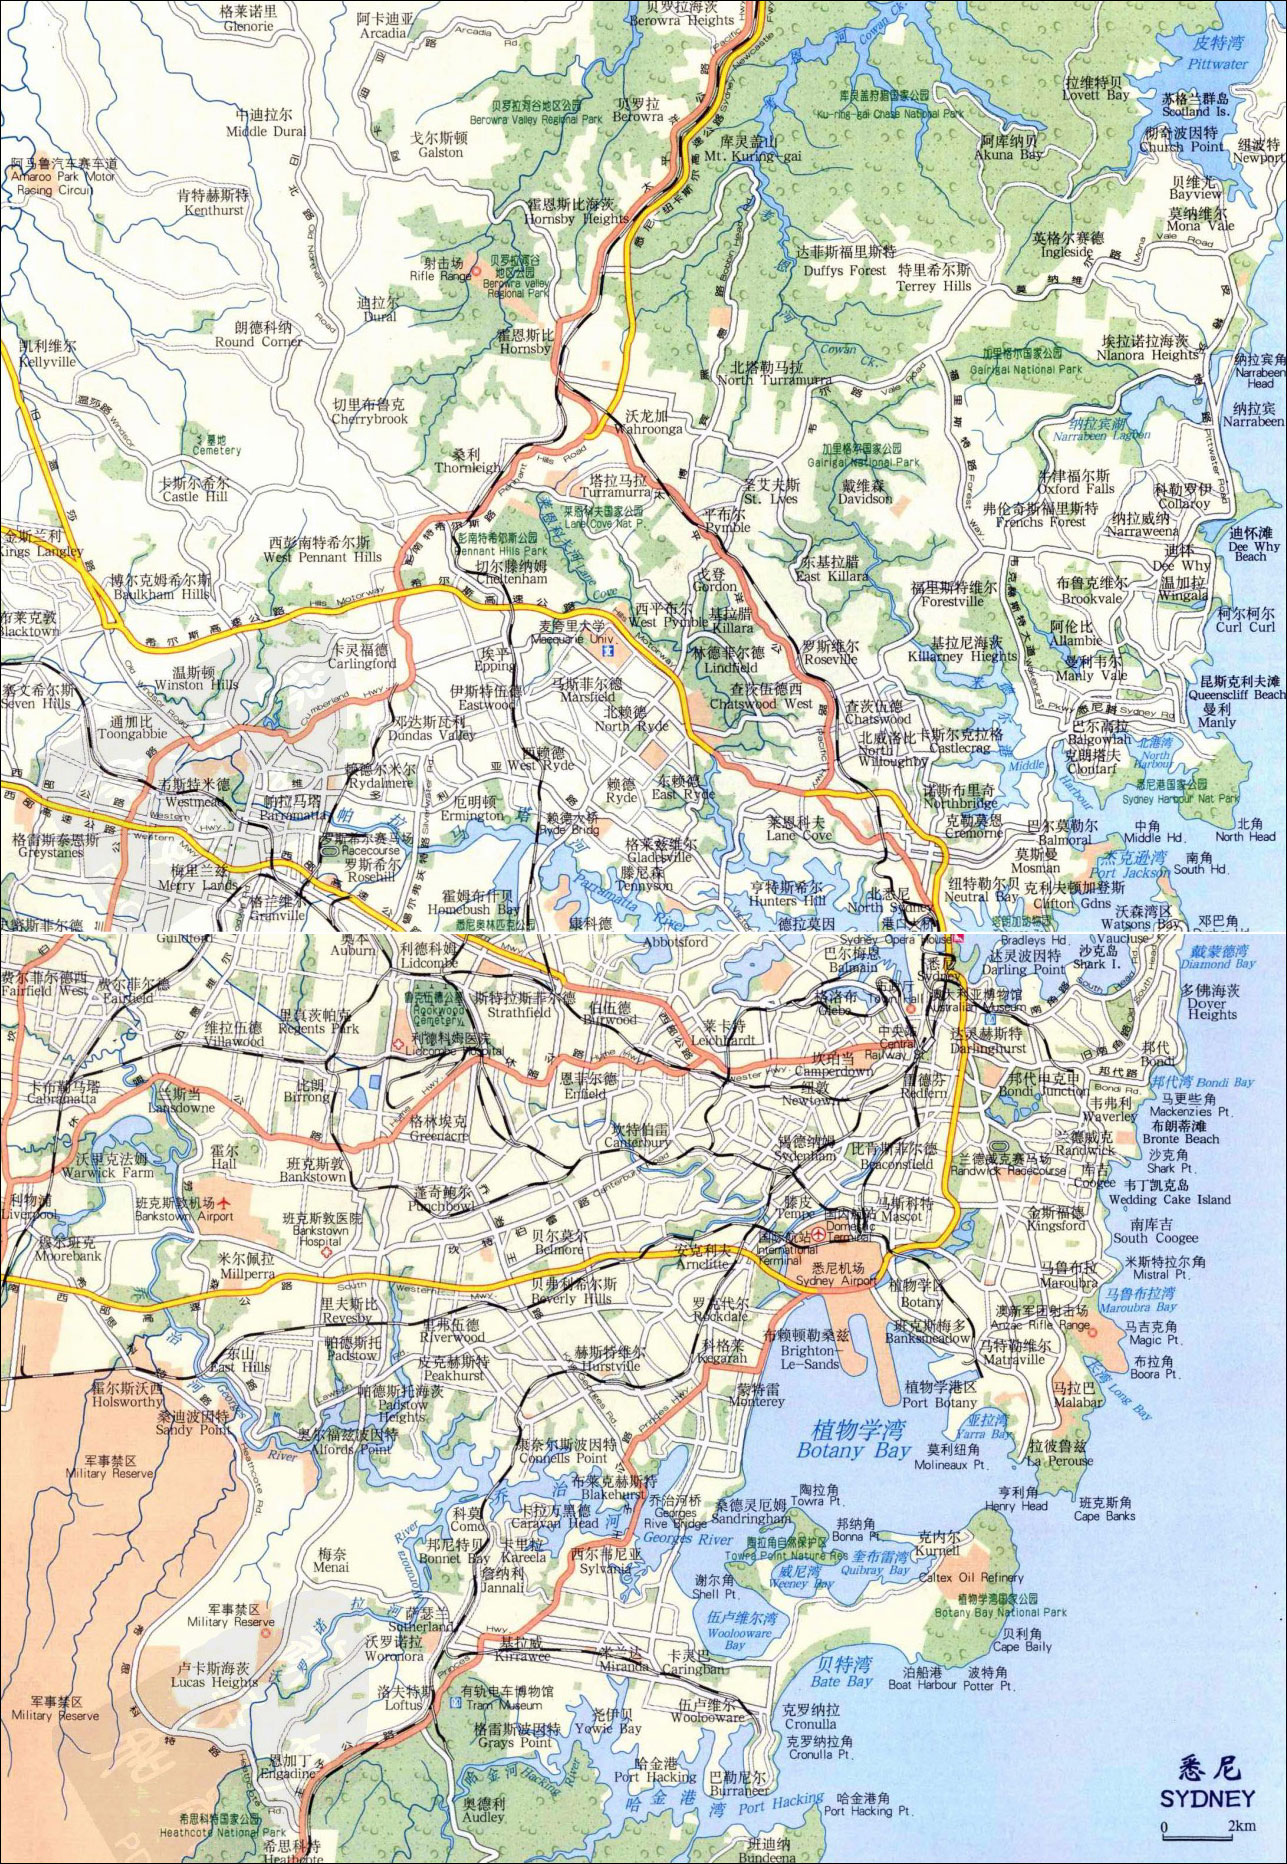 >> 悉尼地图中文版  上一幅地图: 新南威尔士州地图 | 澳大利亚 | 下